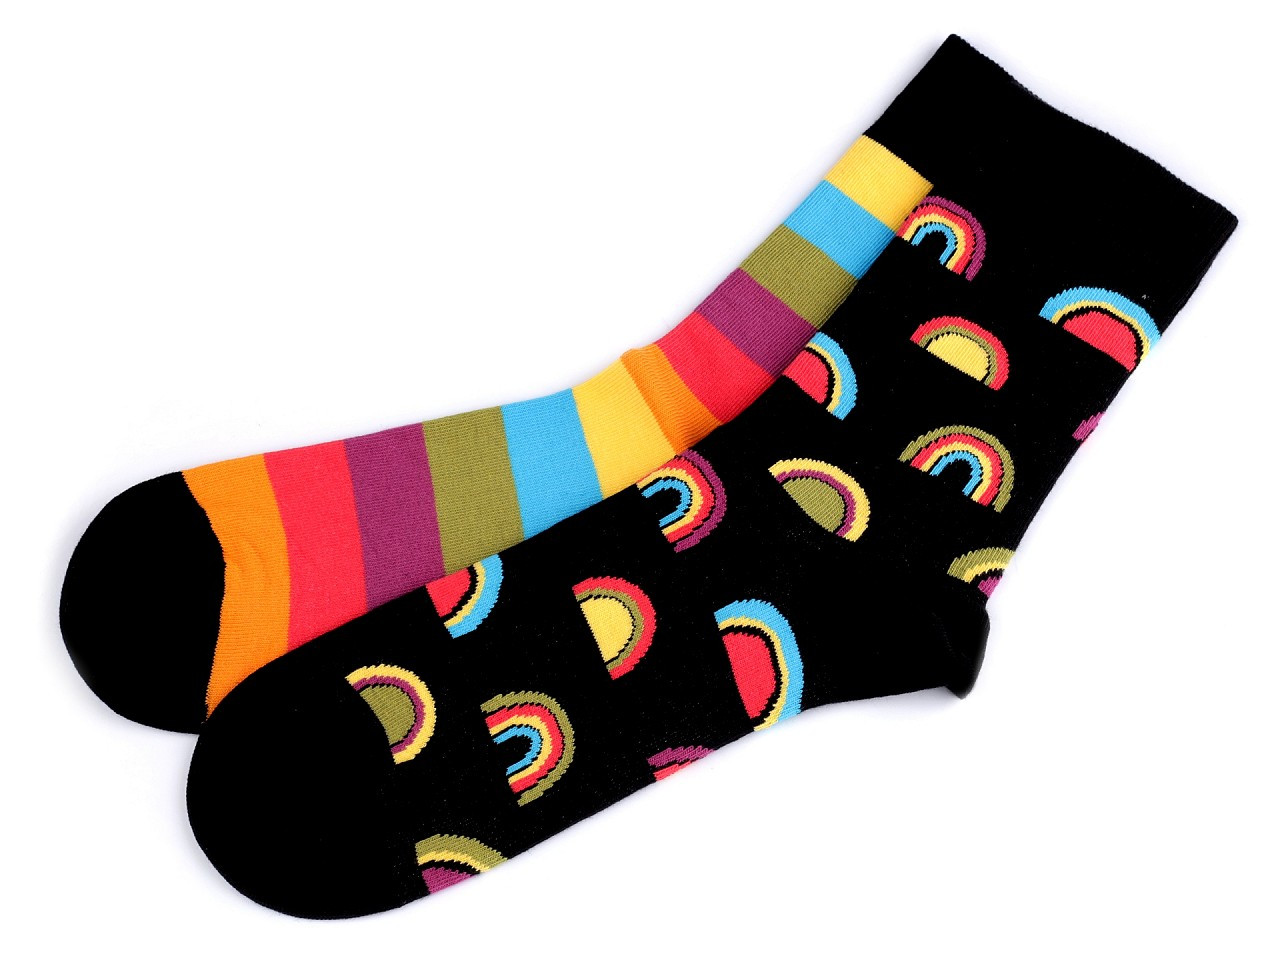 Veselé ponožky Wola, bavlněné, barva 43 (vel. 43/46) černá duha